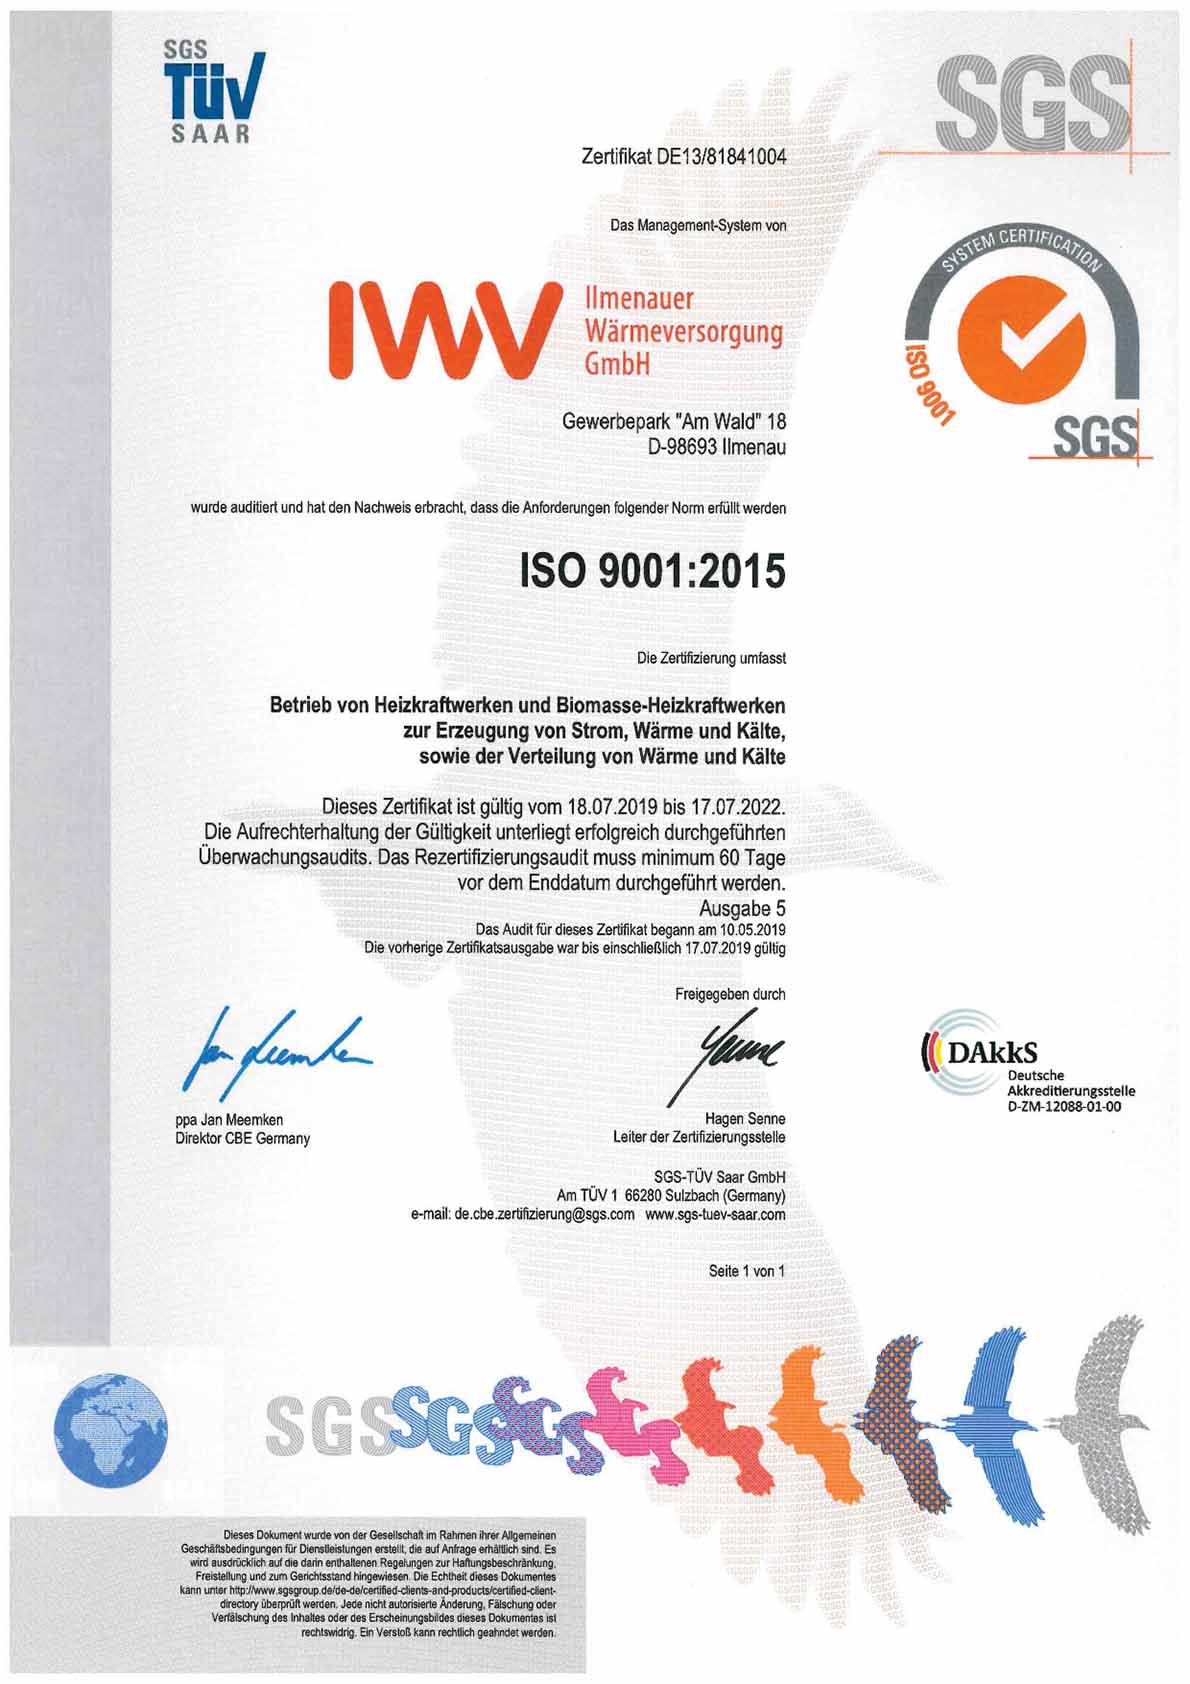 IWV Ilmenauer Wärmeversorgung GmbH - Zertifizierung